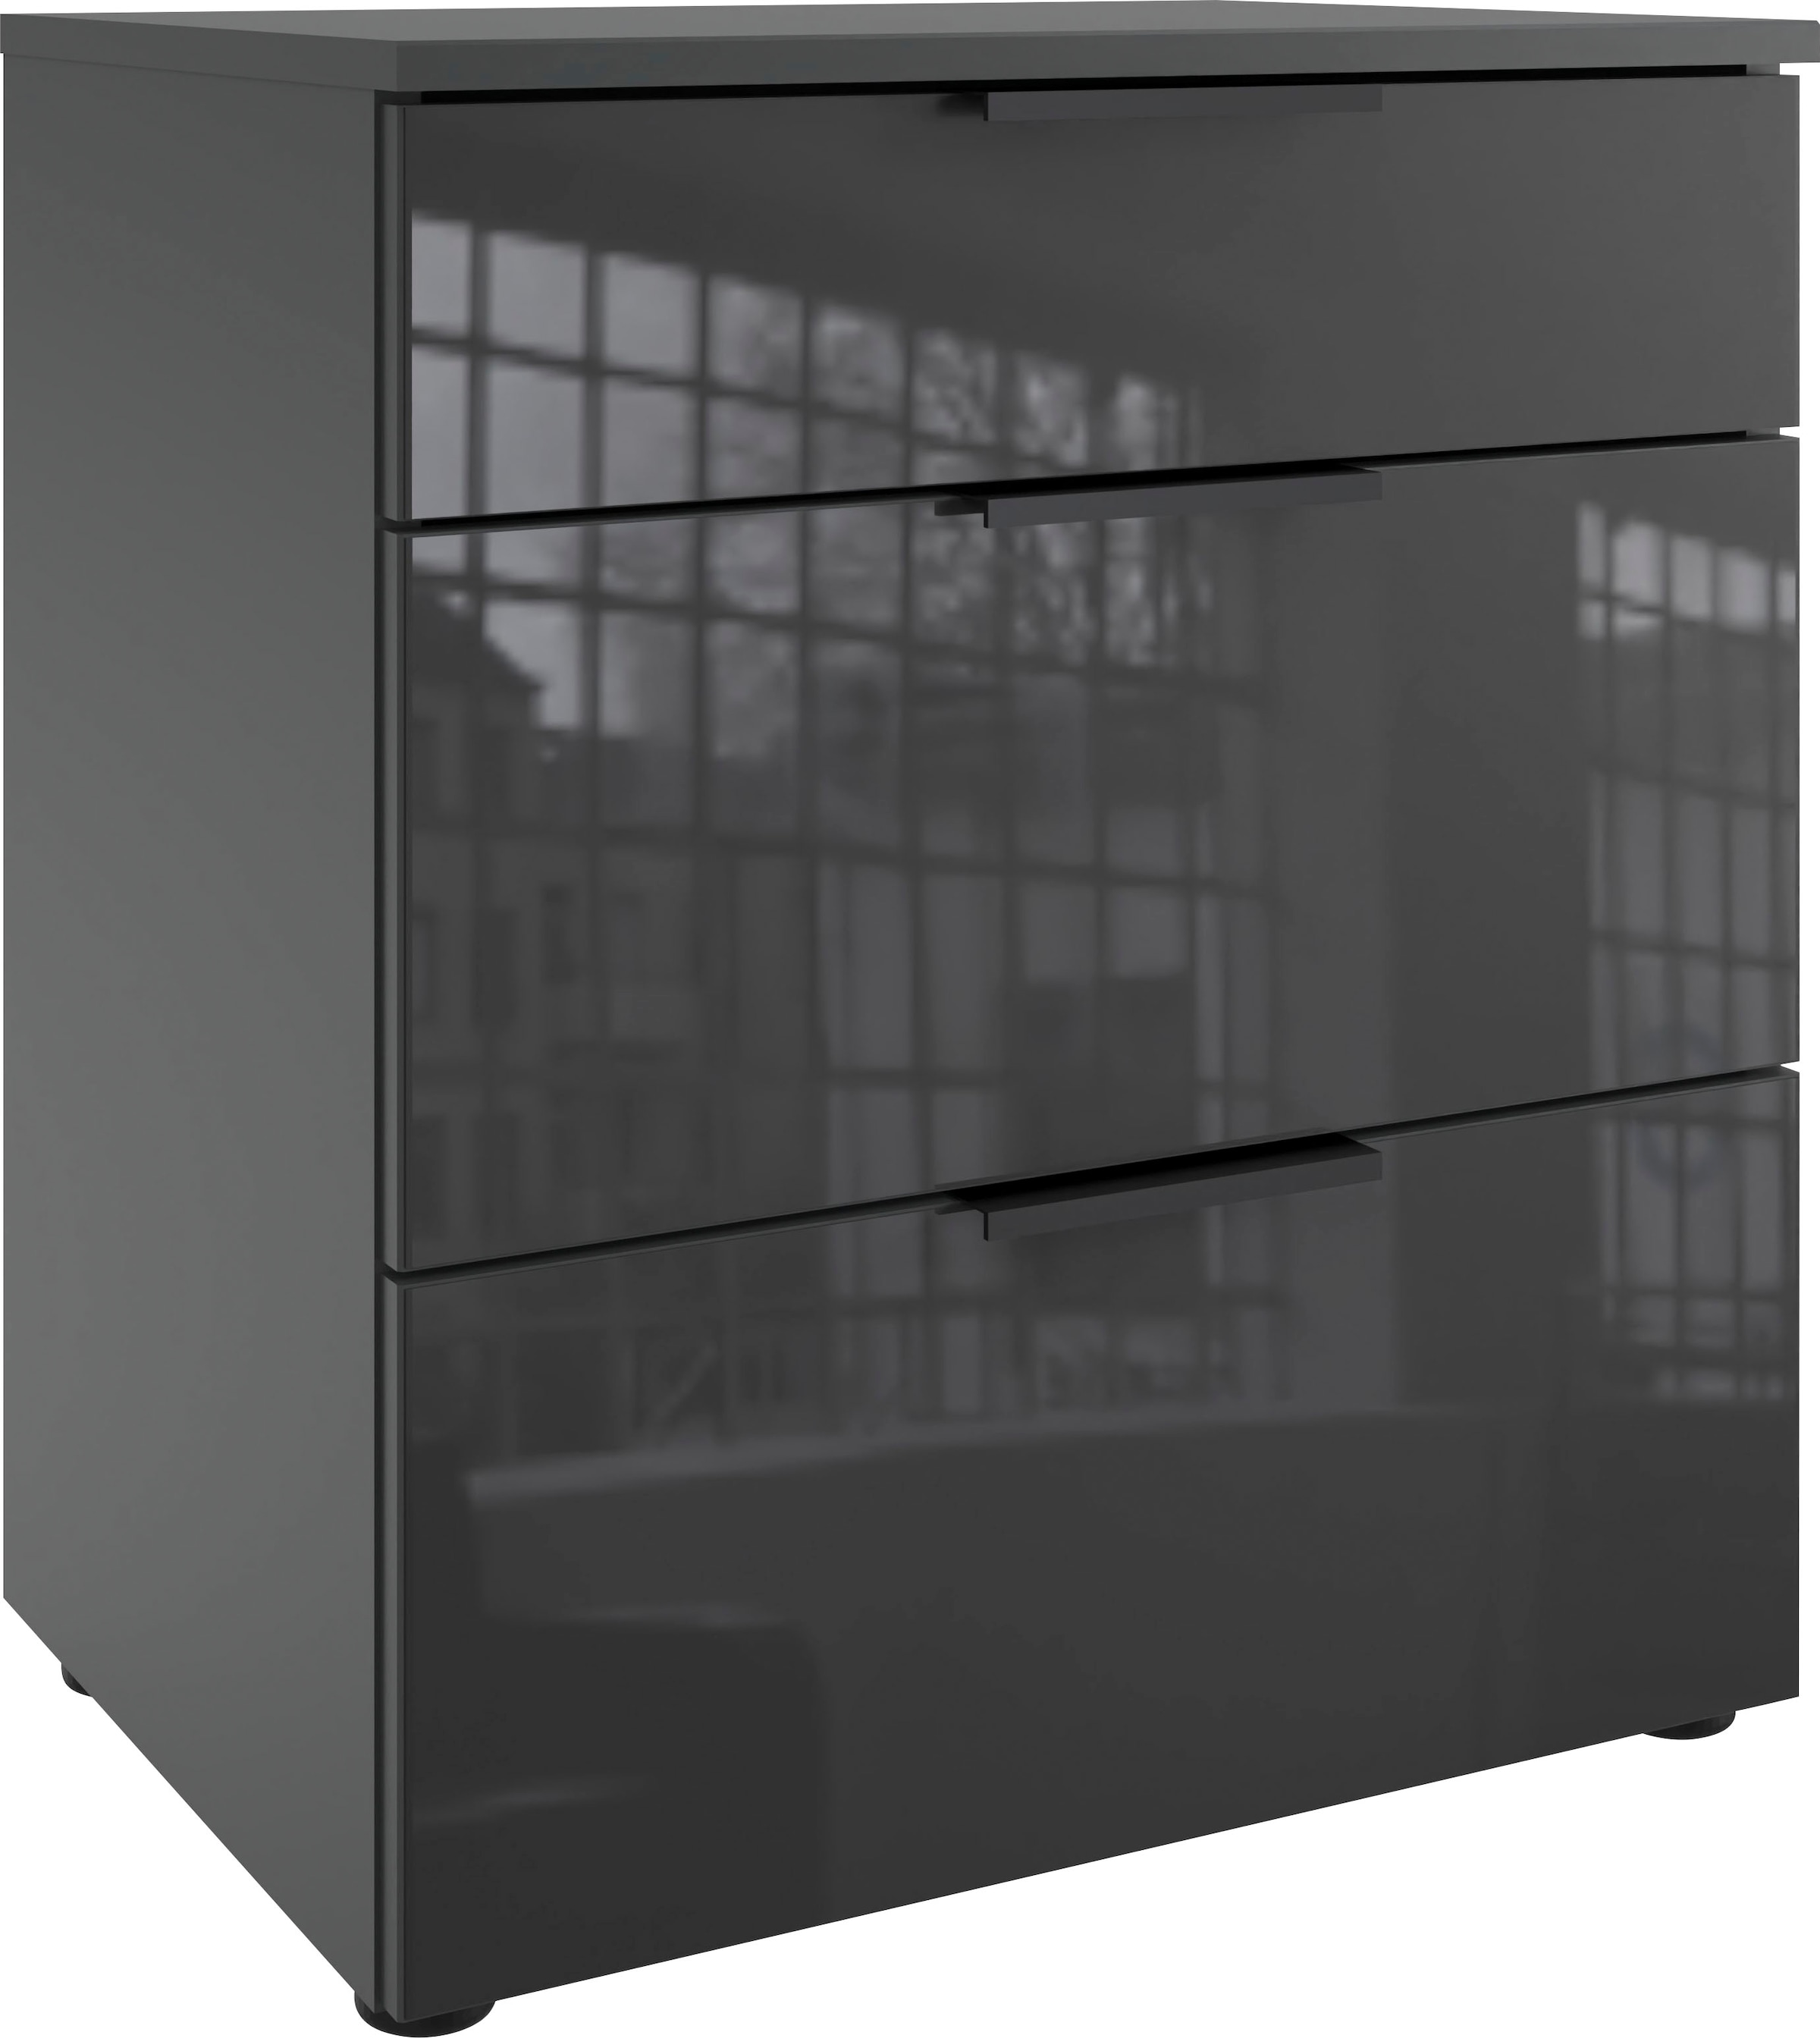 Wimex Nachtkommode »Level36 black C by fresh to go«, mit Glaselementen auf der Front, soft-close Funktion, 54cm breit